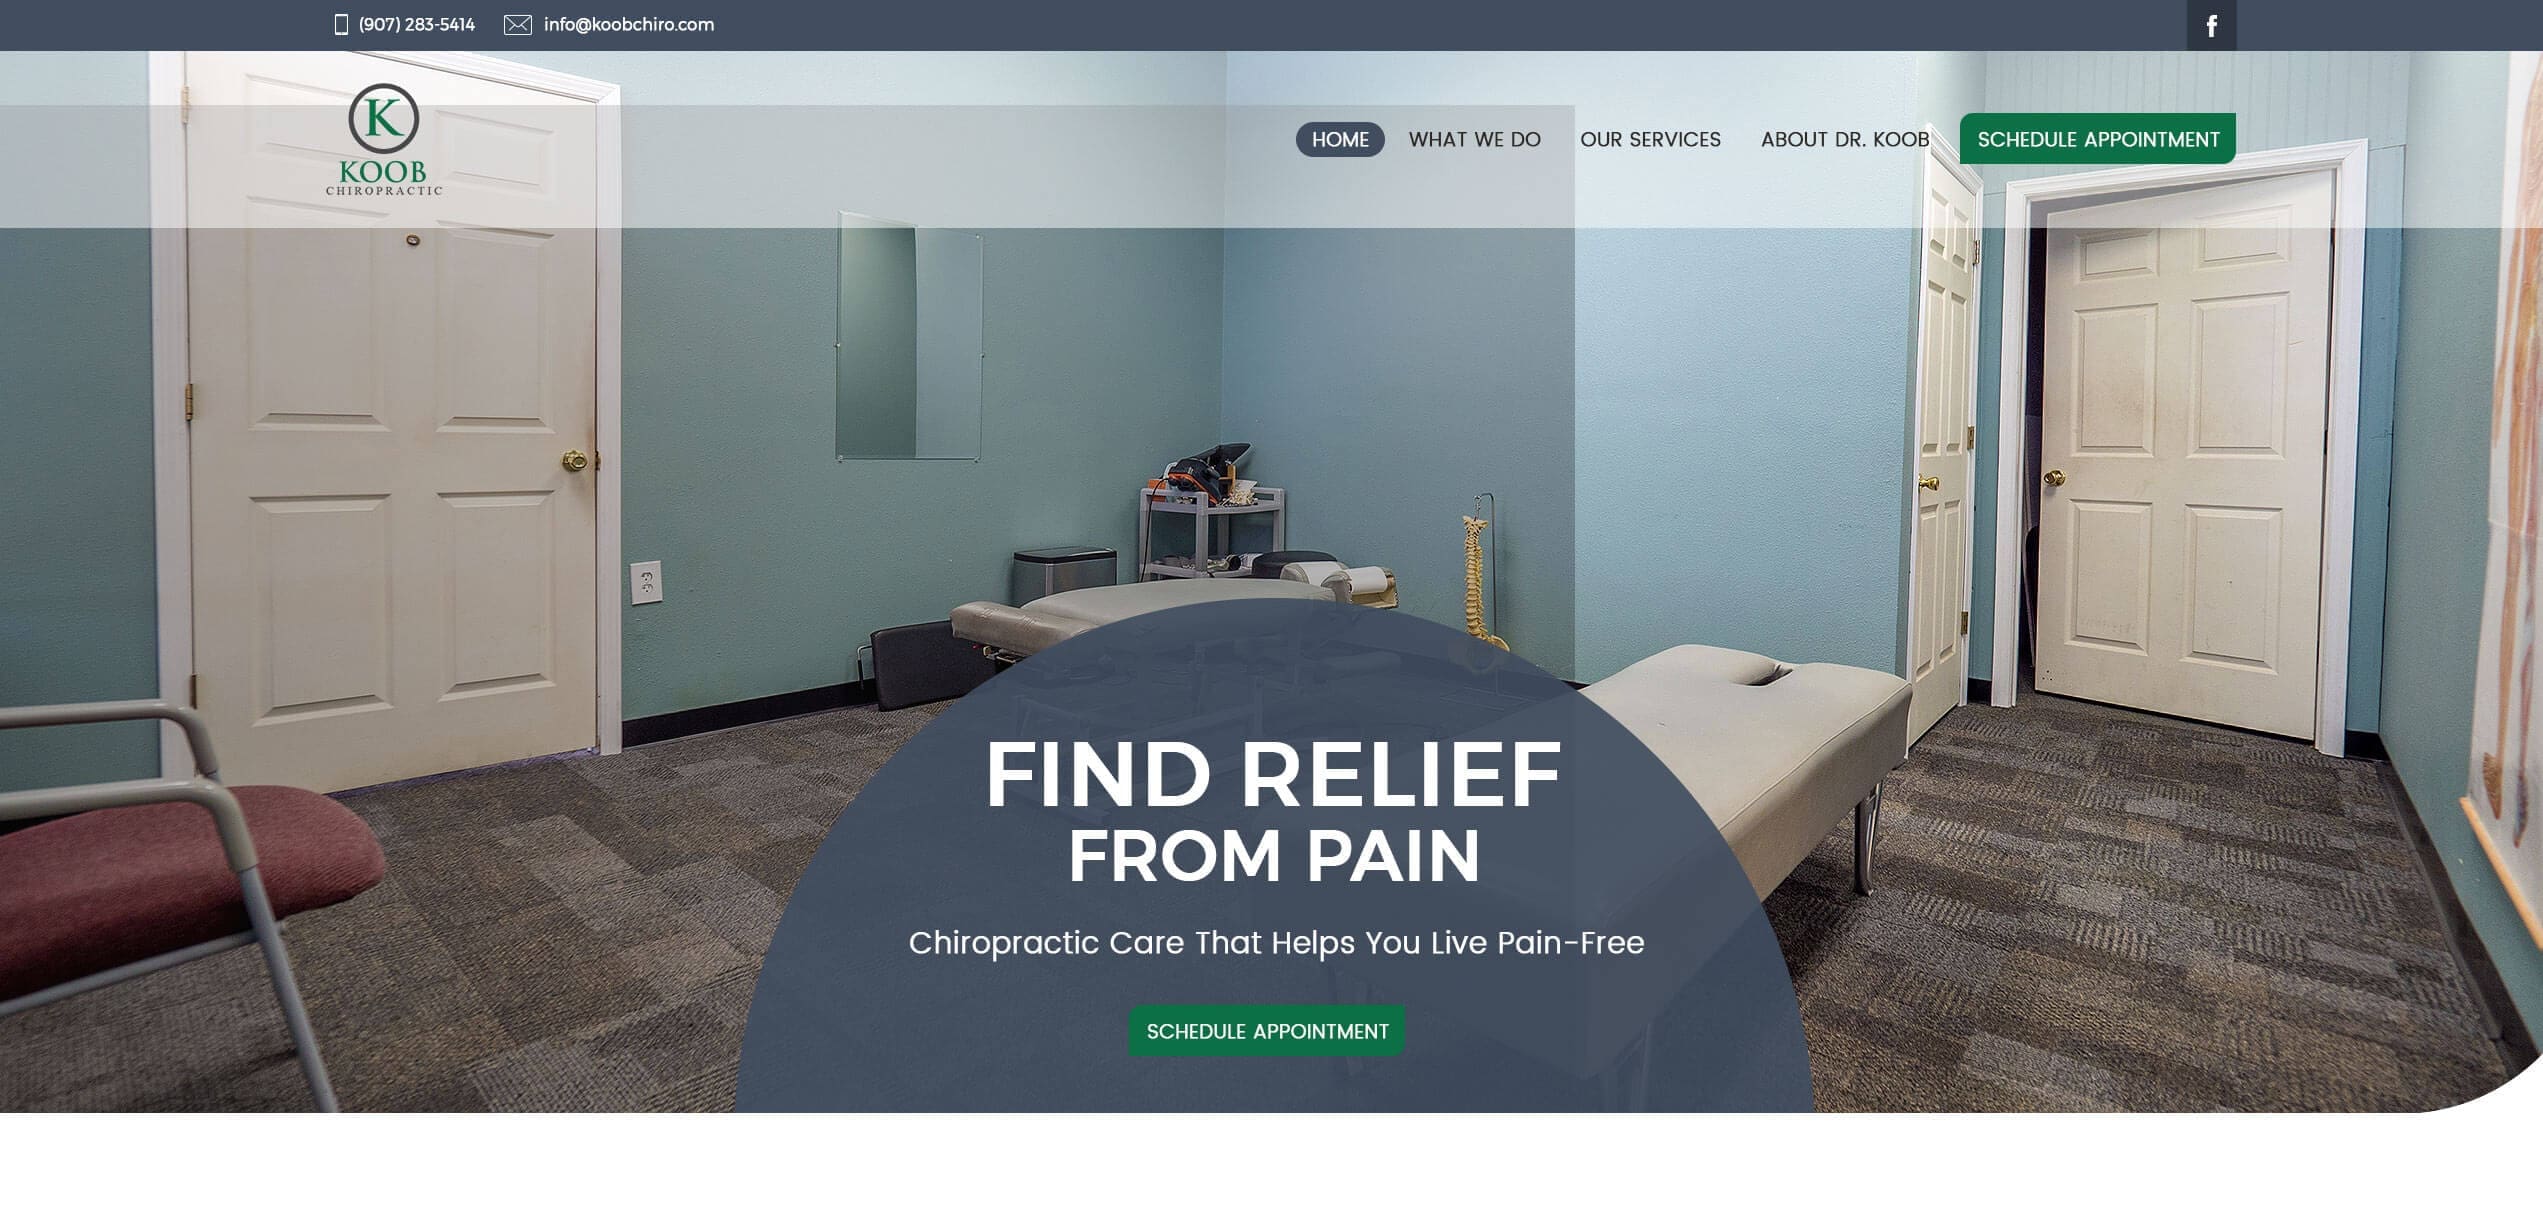 Koob Chiropractic Website Design